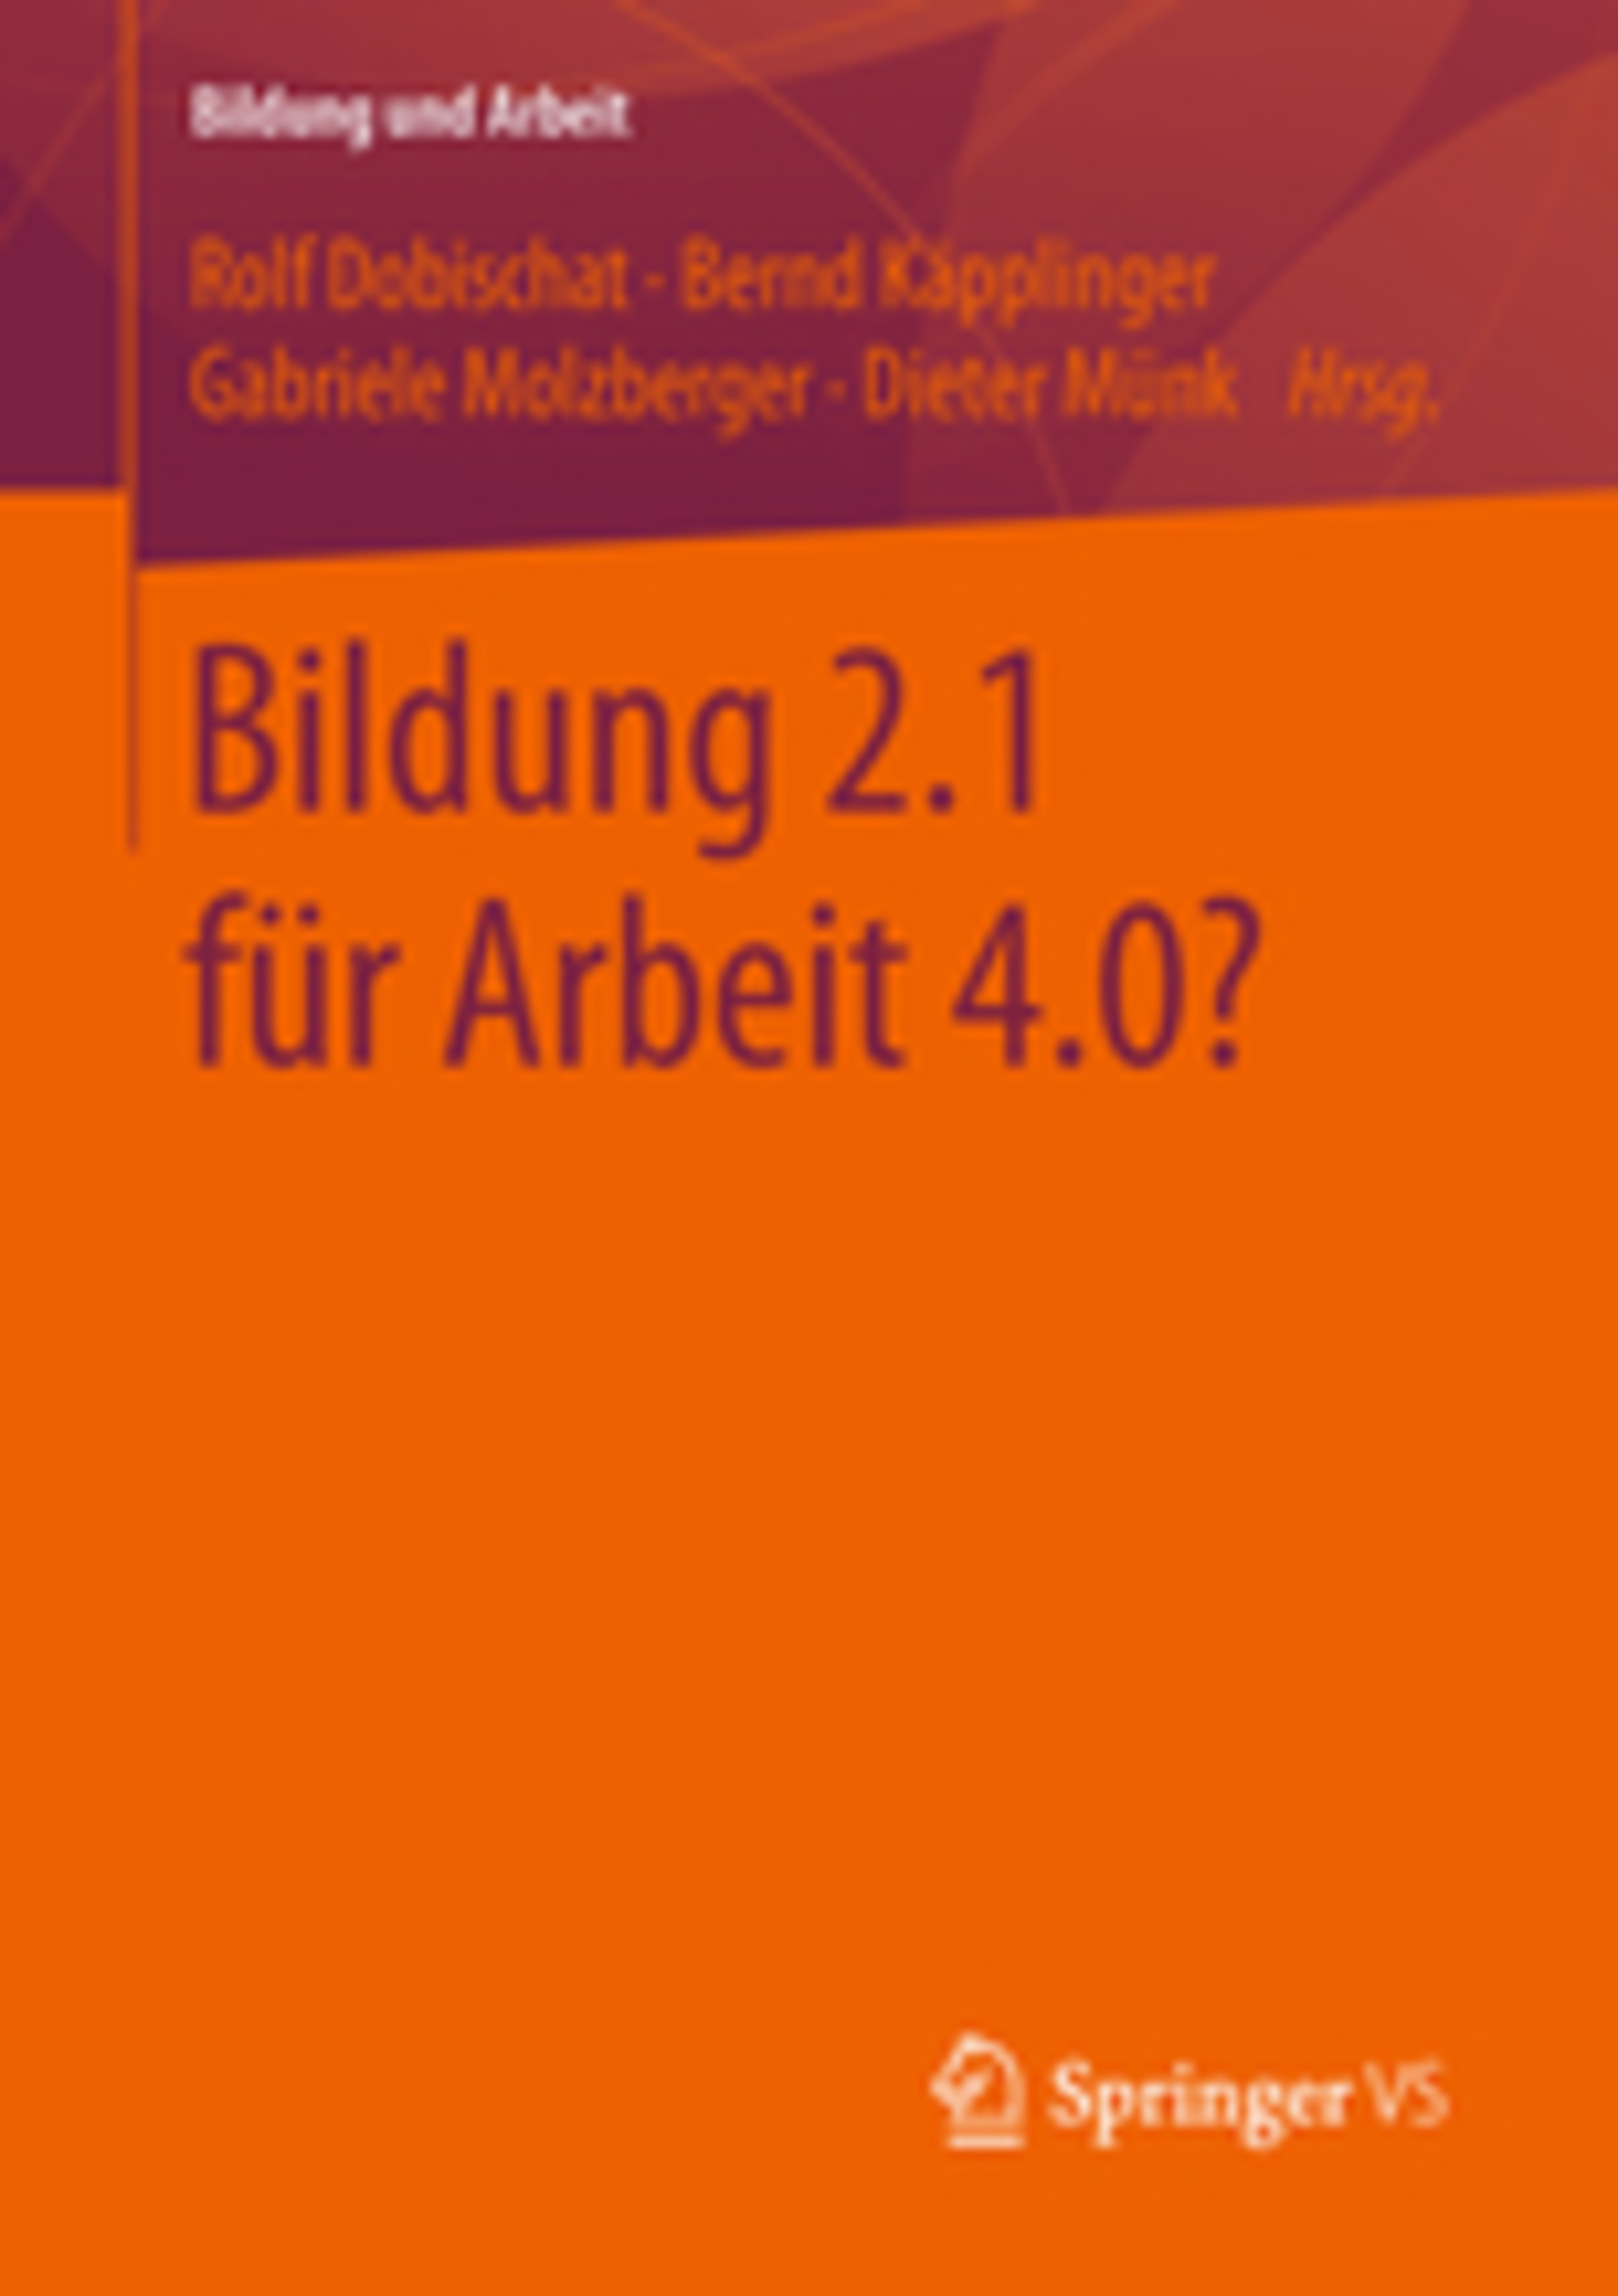 Hirsch-Kreinsen, Hartmut/Ittermann, Peter (2019):